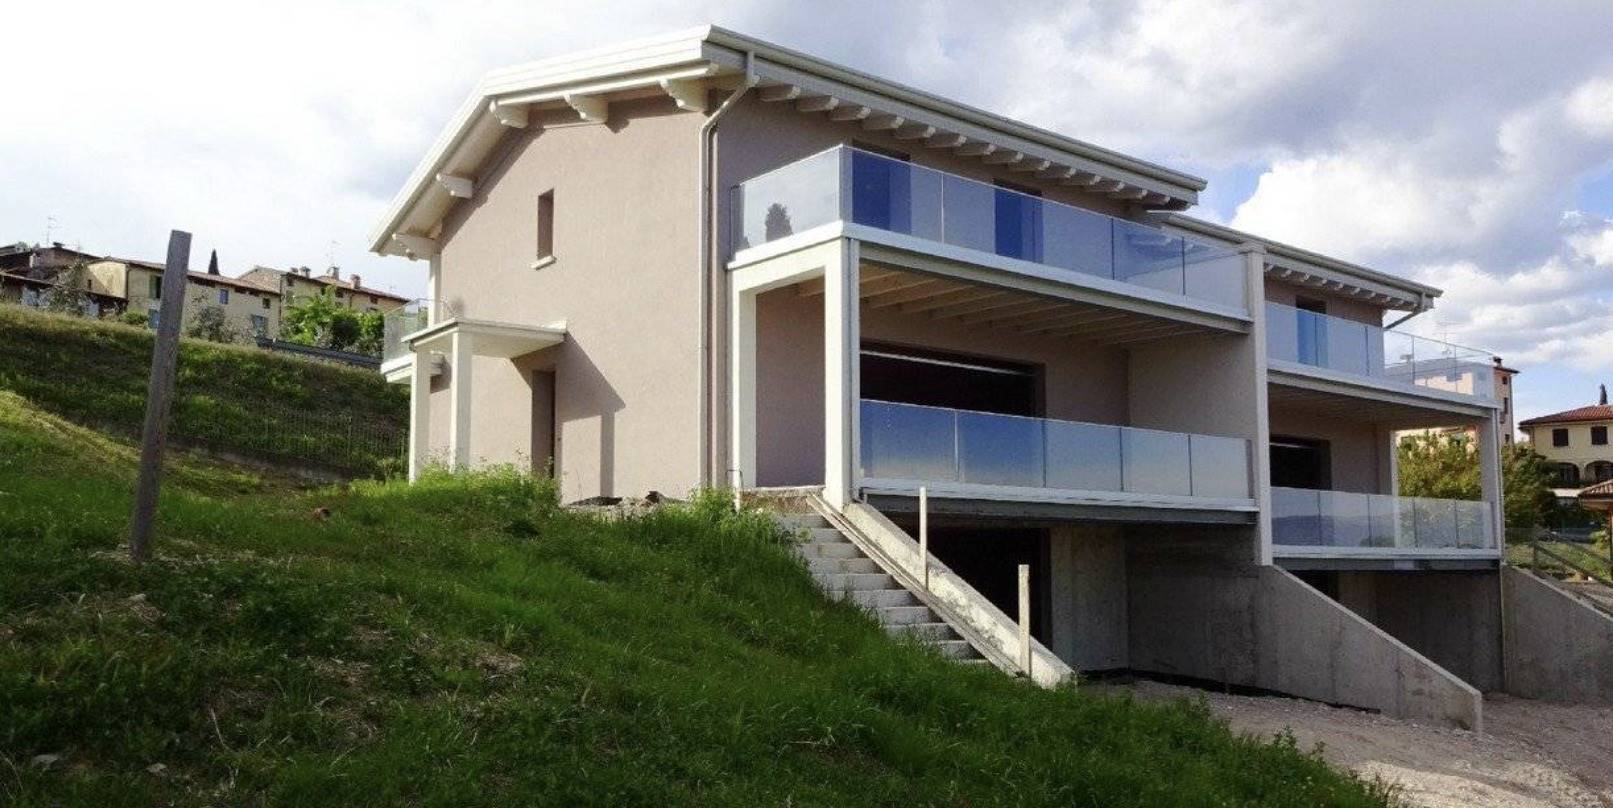 Villa Bifamiliare in vendita a Polpenazze del Garda, 6 locali, Trattative riservate | PortaleAgenzieImmobiliari.it